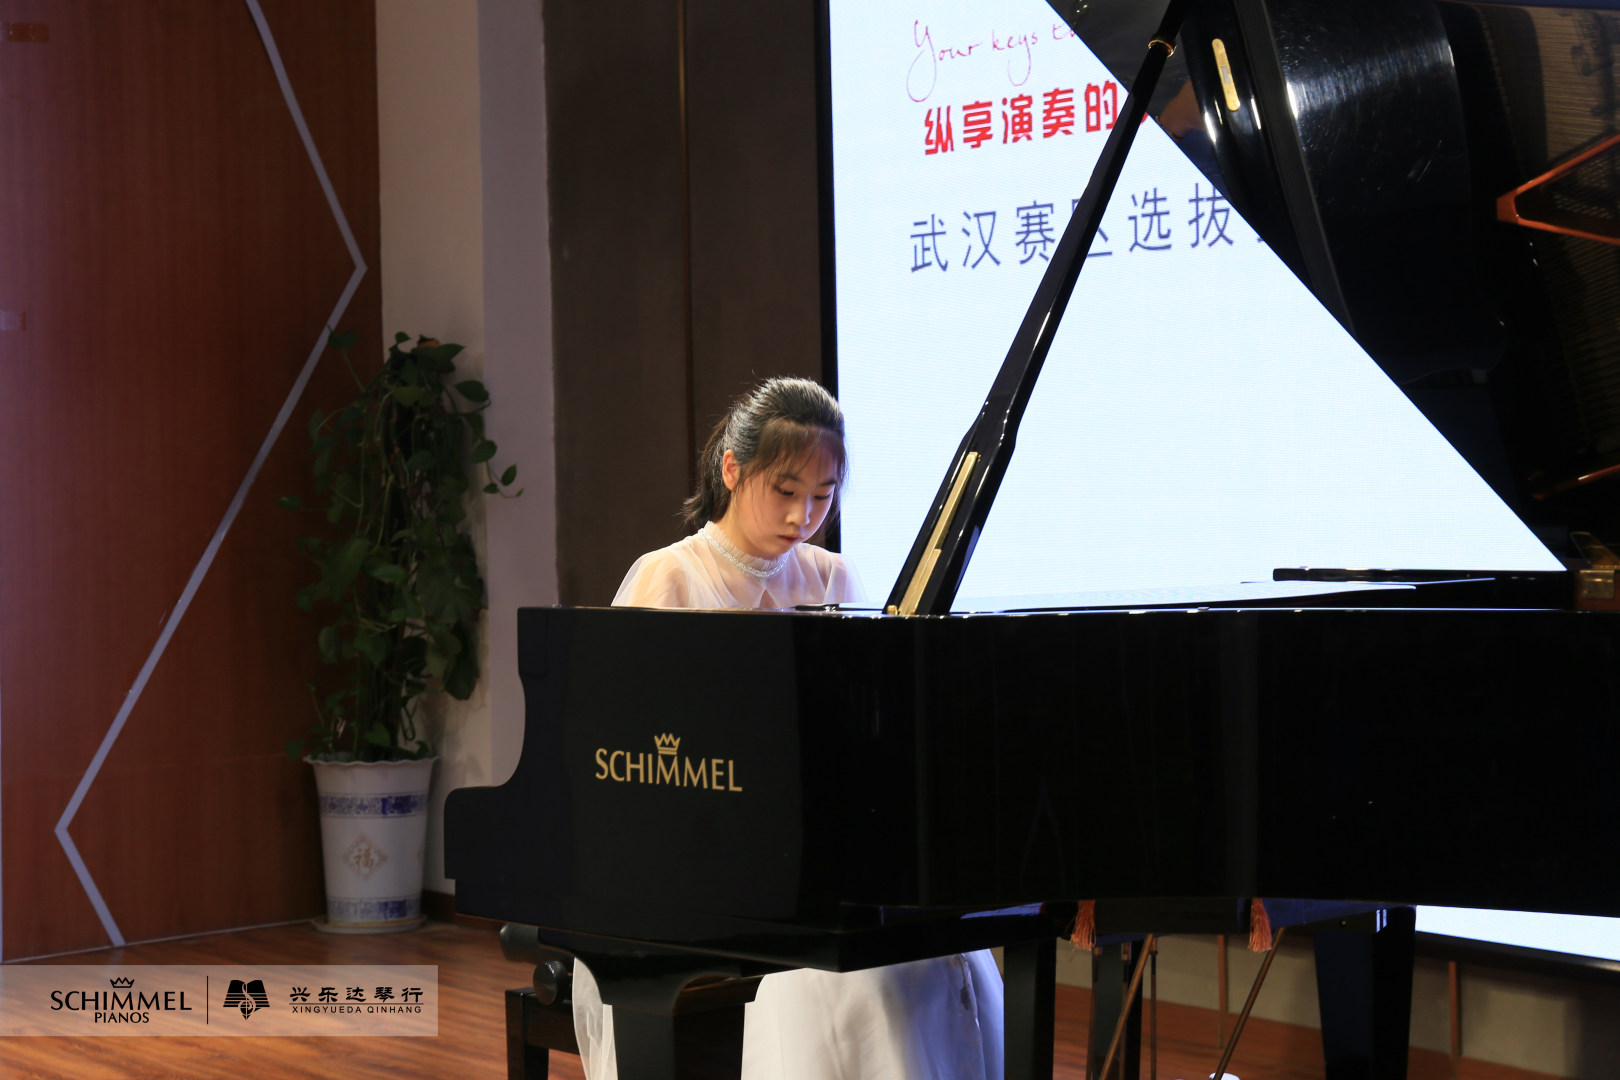 舒密尔钢琴赛事资讯 | 新疆、武汉、平顶山选拔赛精彩开赛